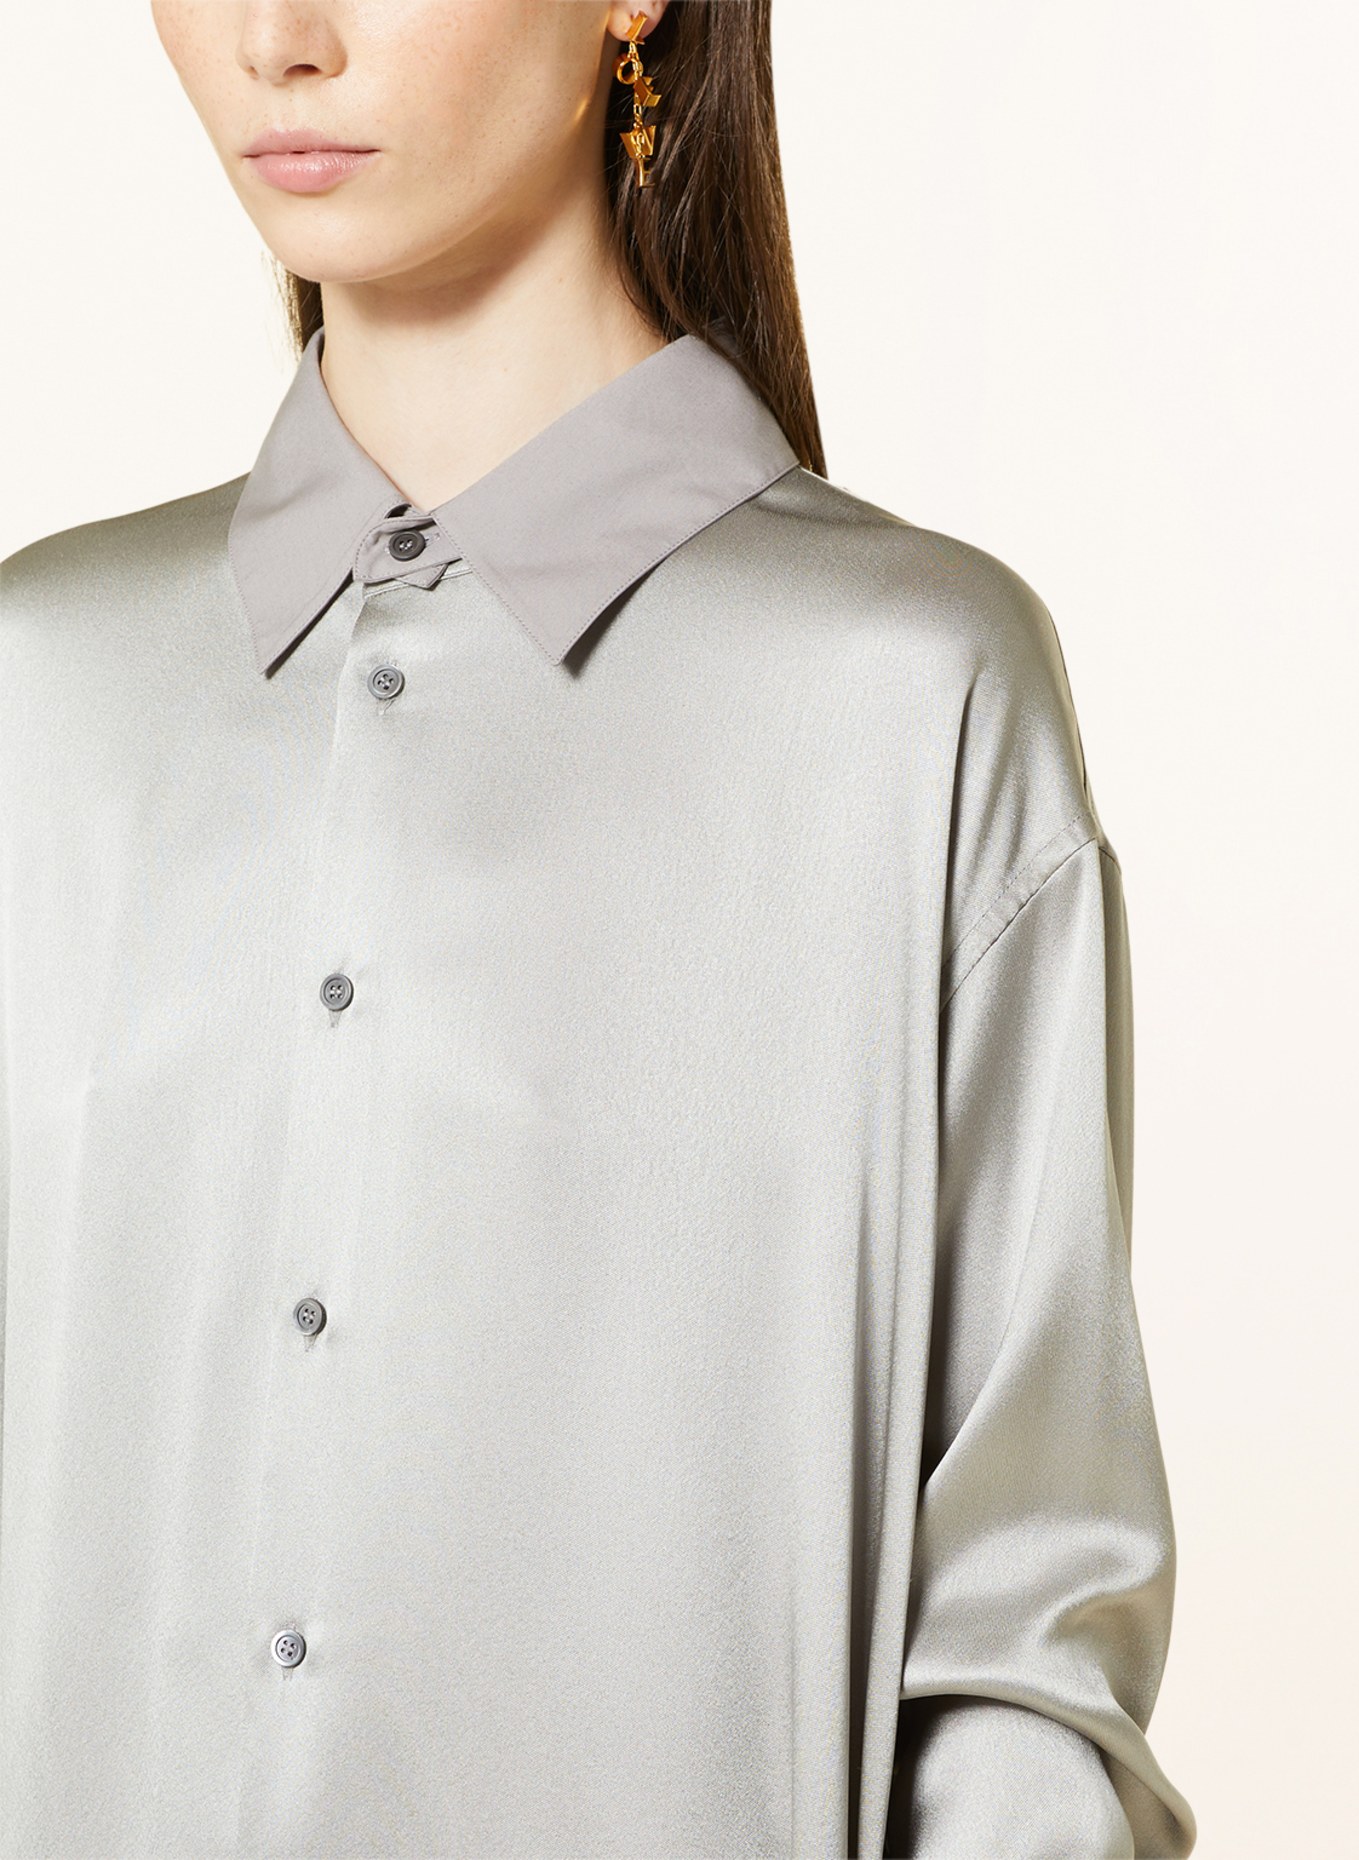 LOEWE Shirt dress in silk, Color: GRAY (Image 4)